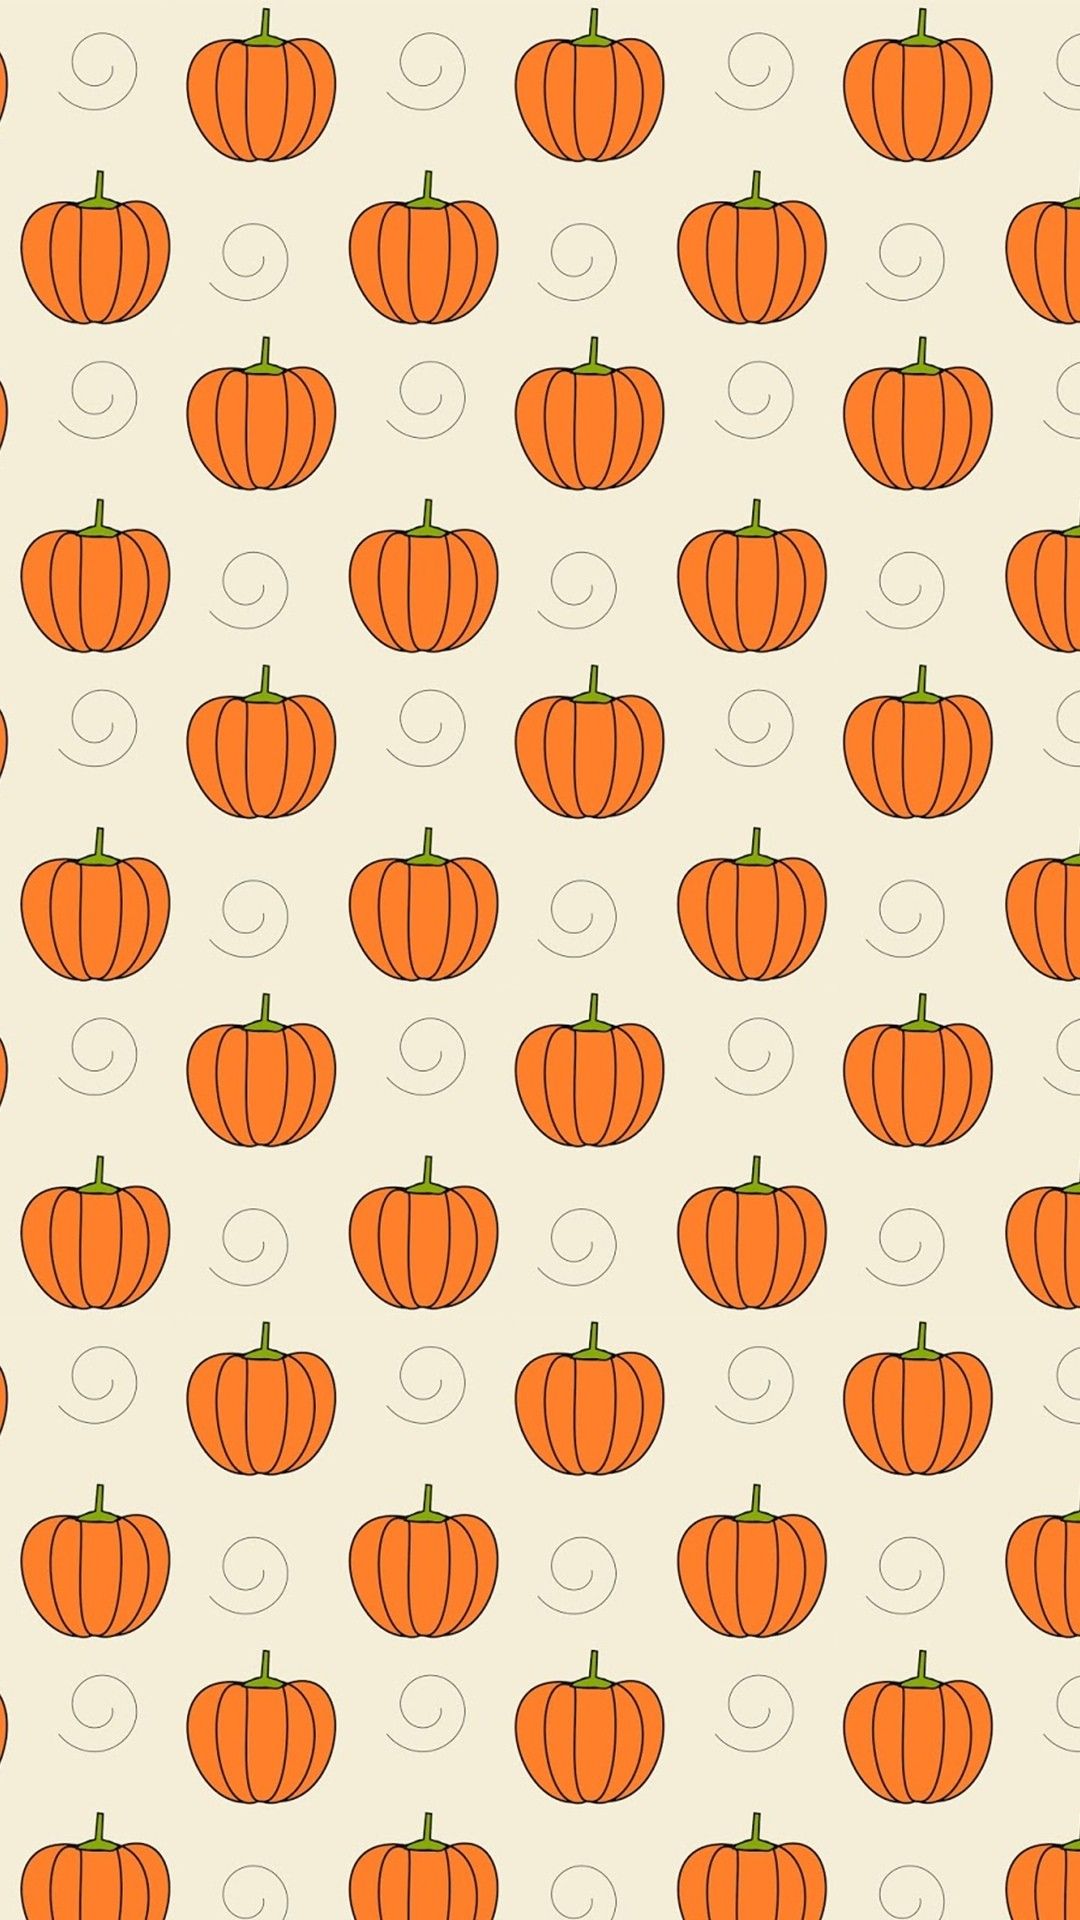 Fall Halloween iPhone Wallpaper